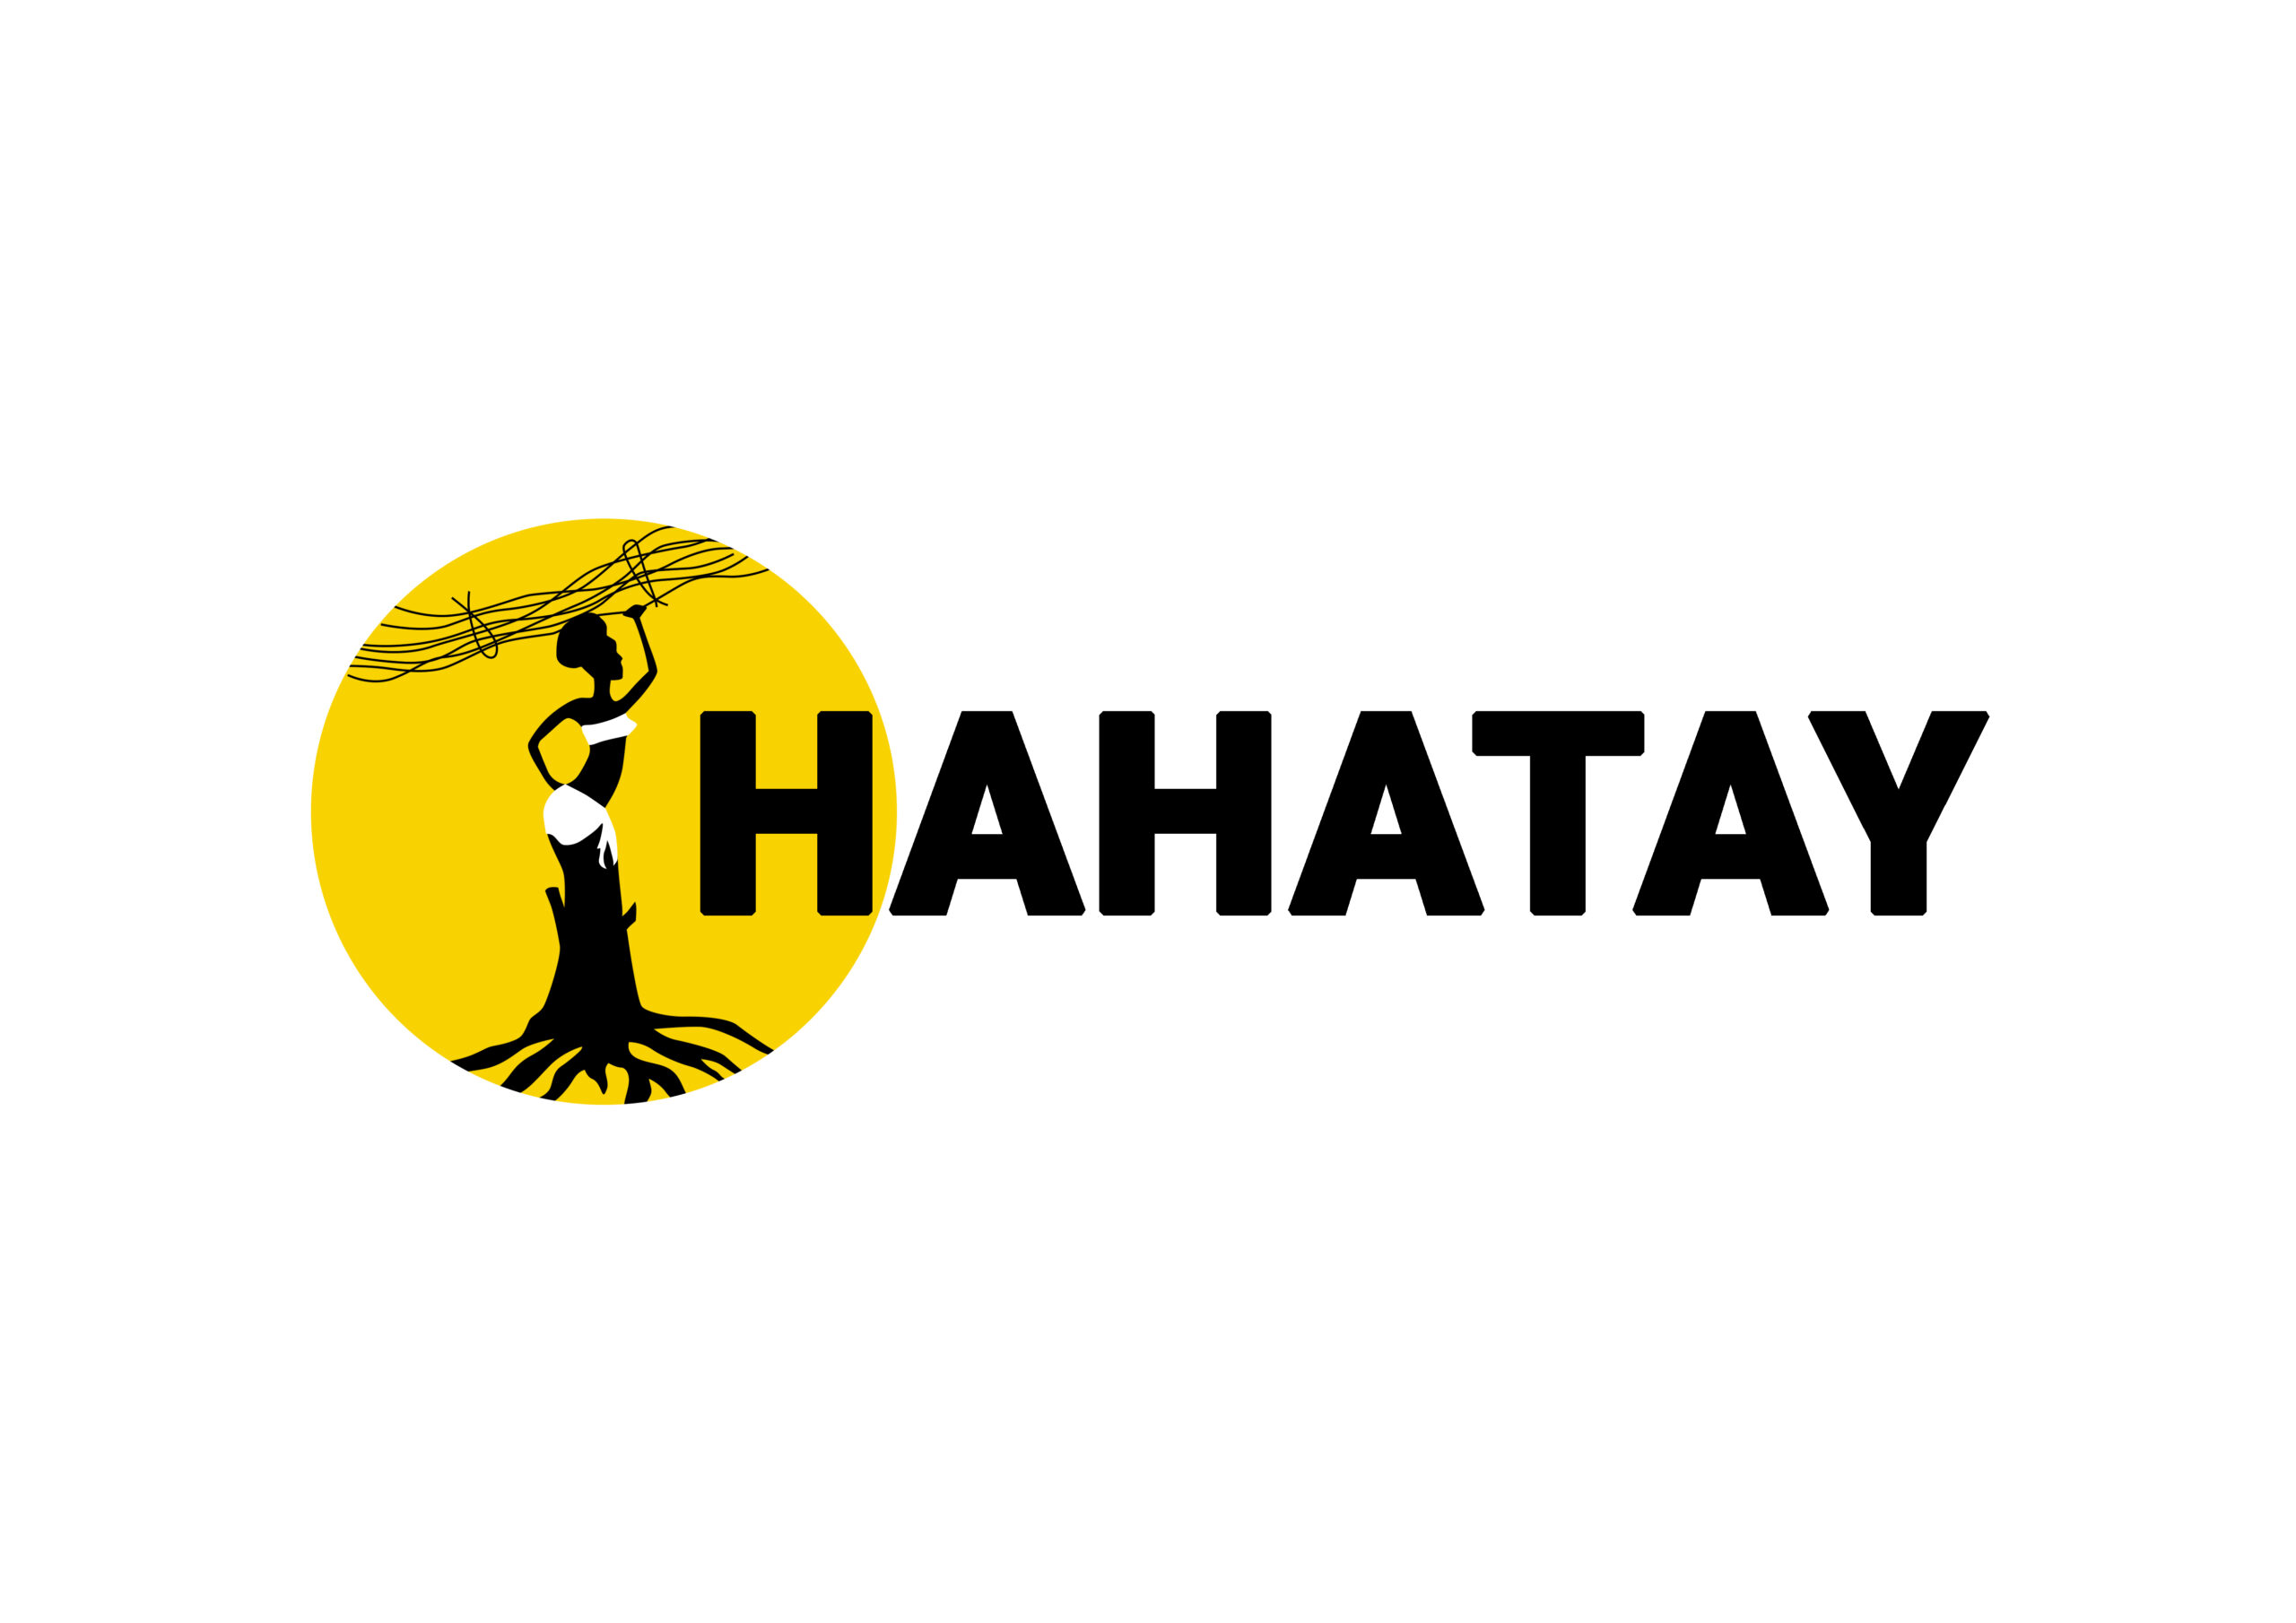 Hahatay